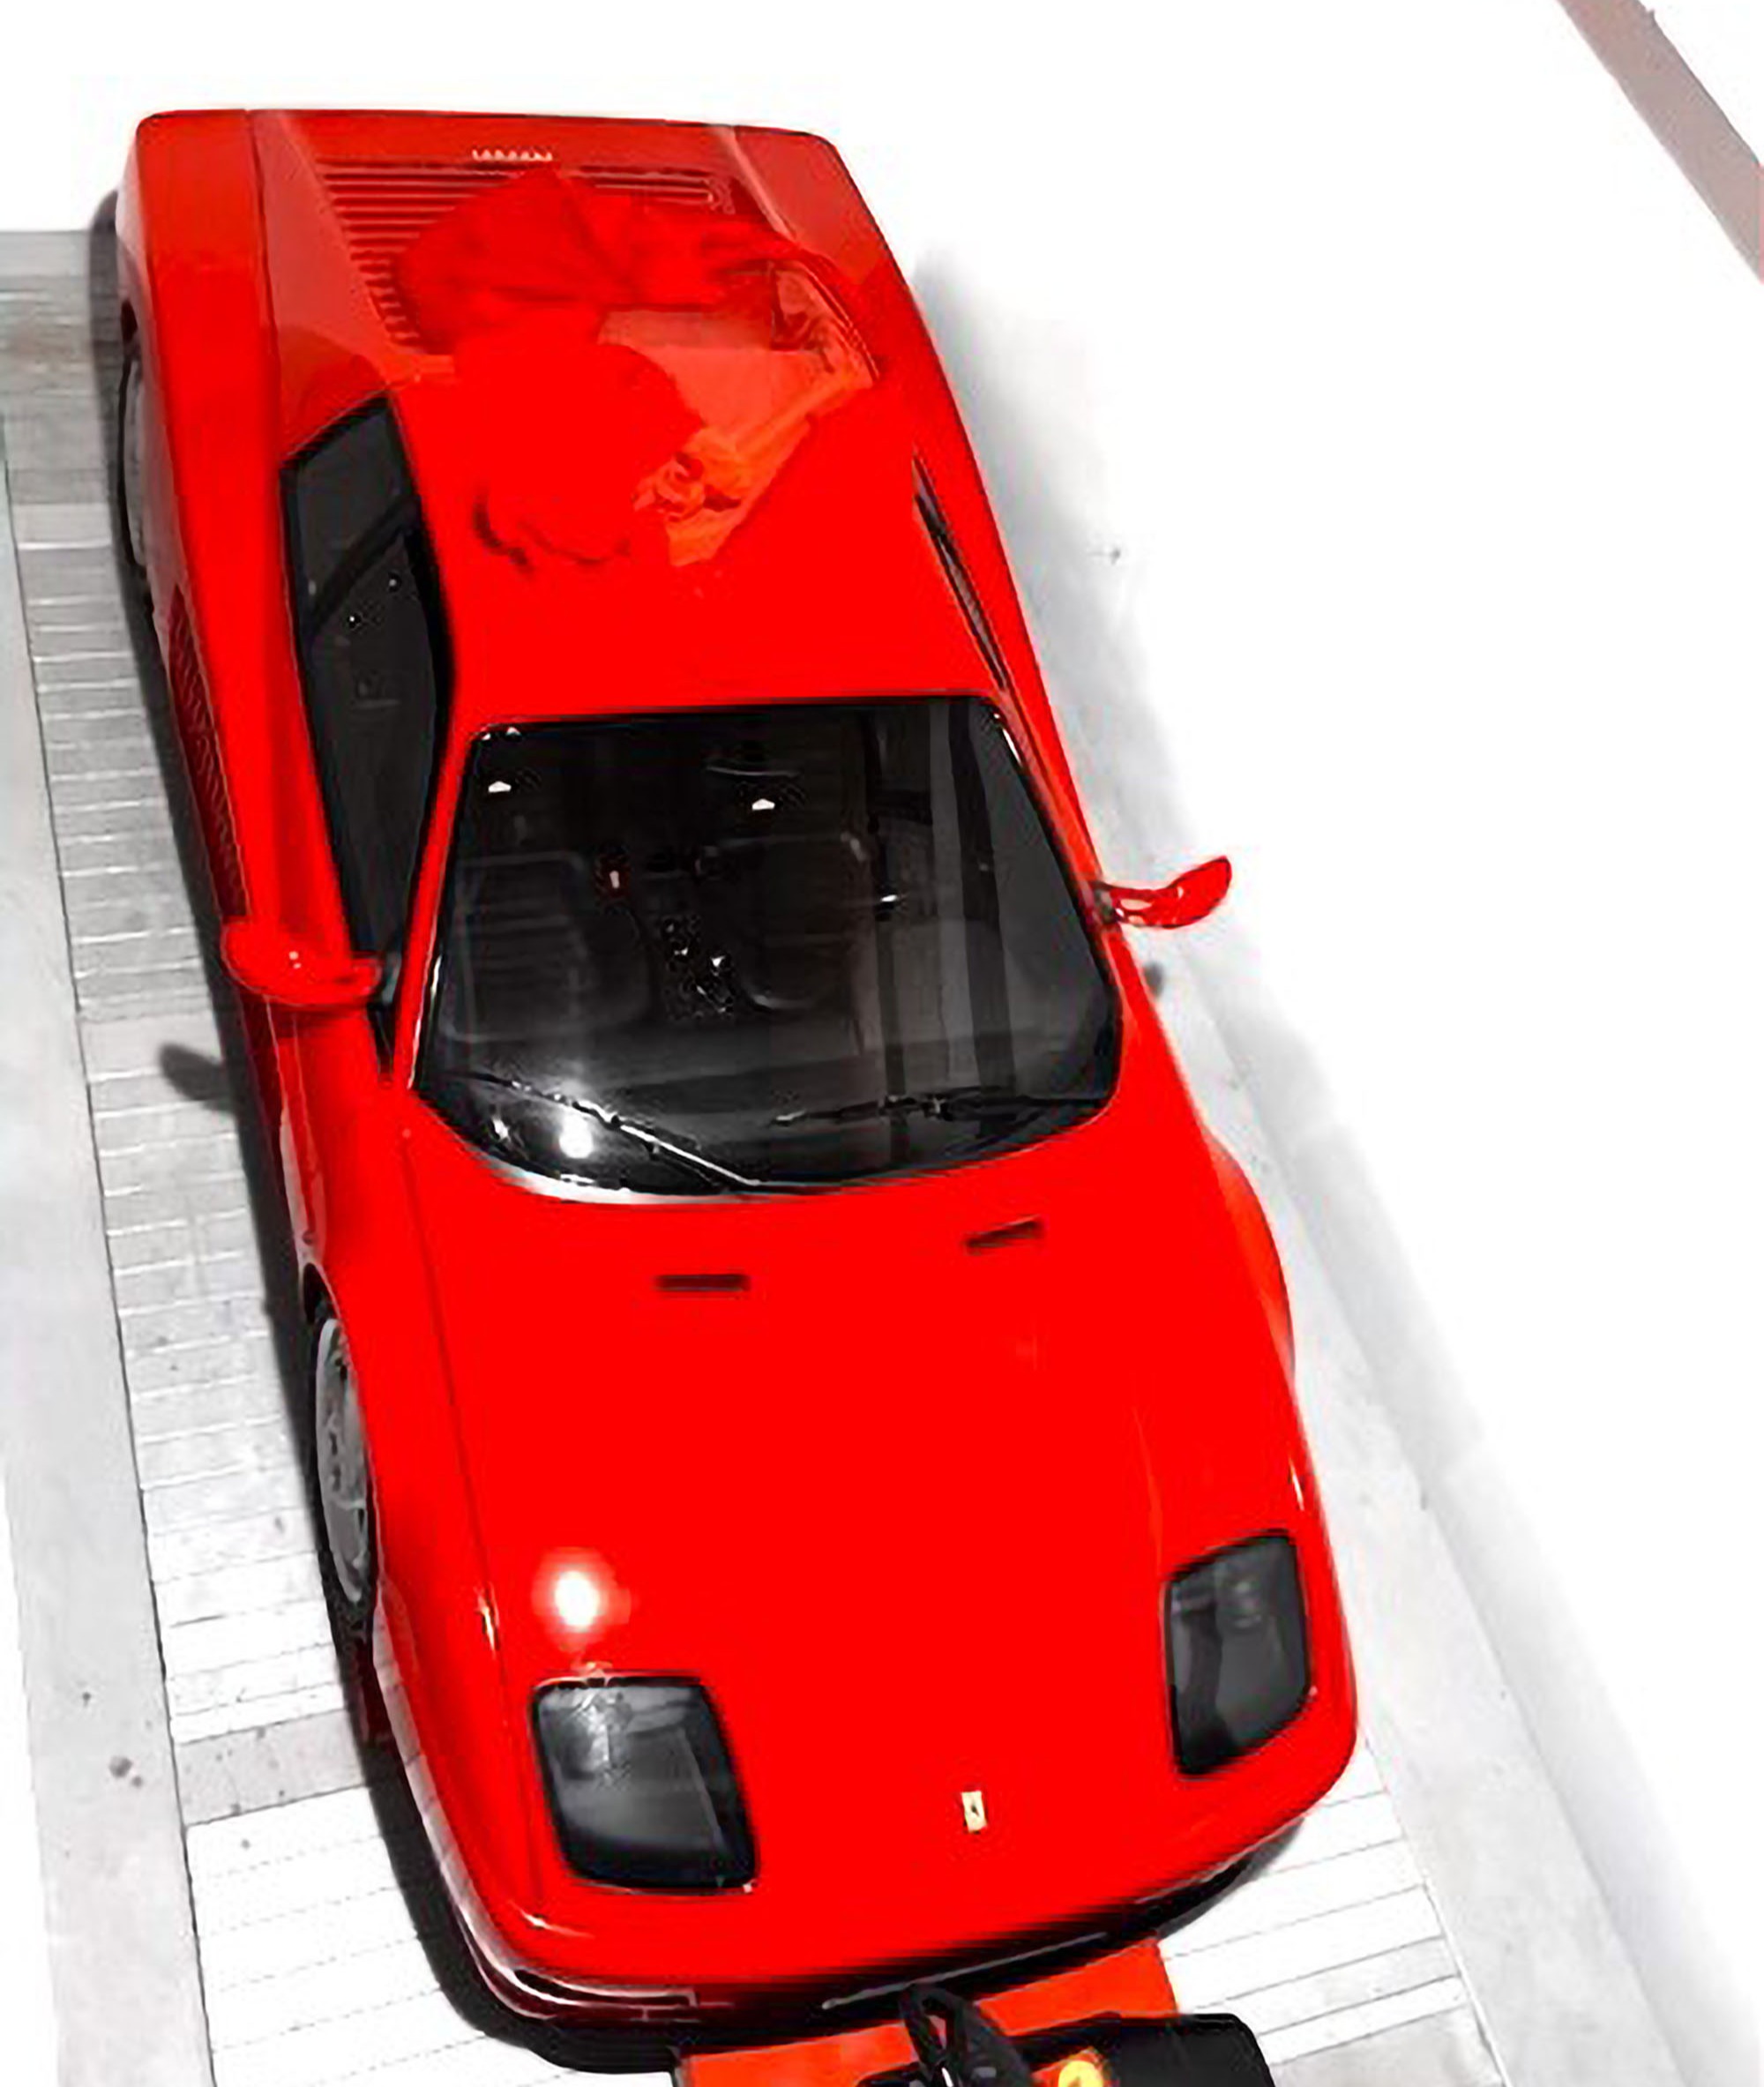 Es wird erwartet, dass Kunden den seltenen Ferrari über 300.000 Pfund kosten werden, um ihn ihr Eigen zu nennen